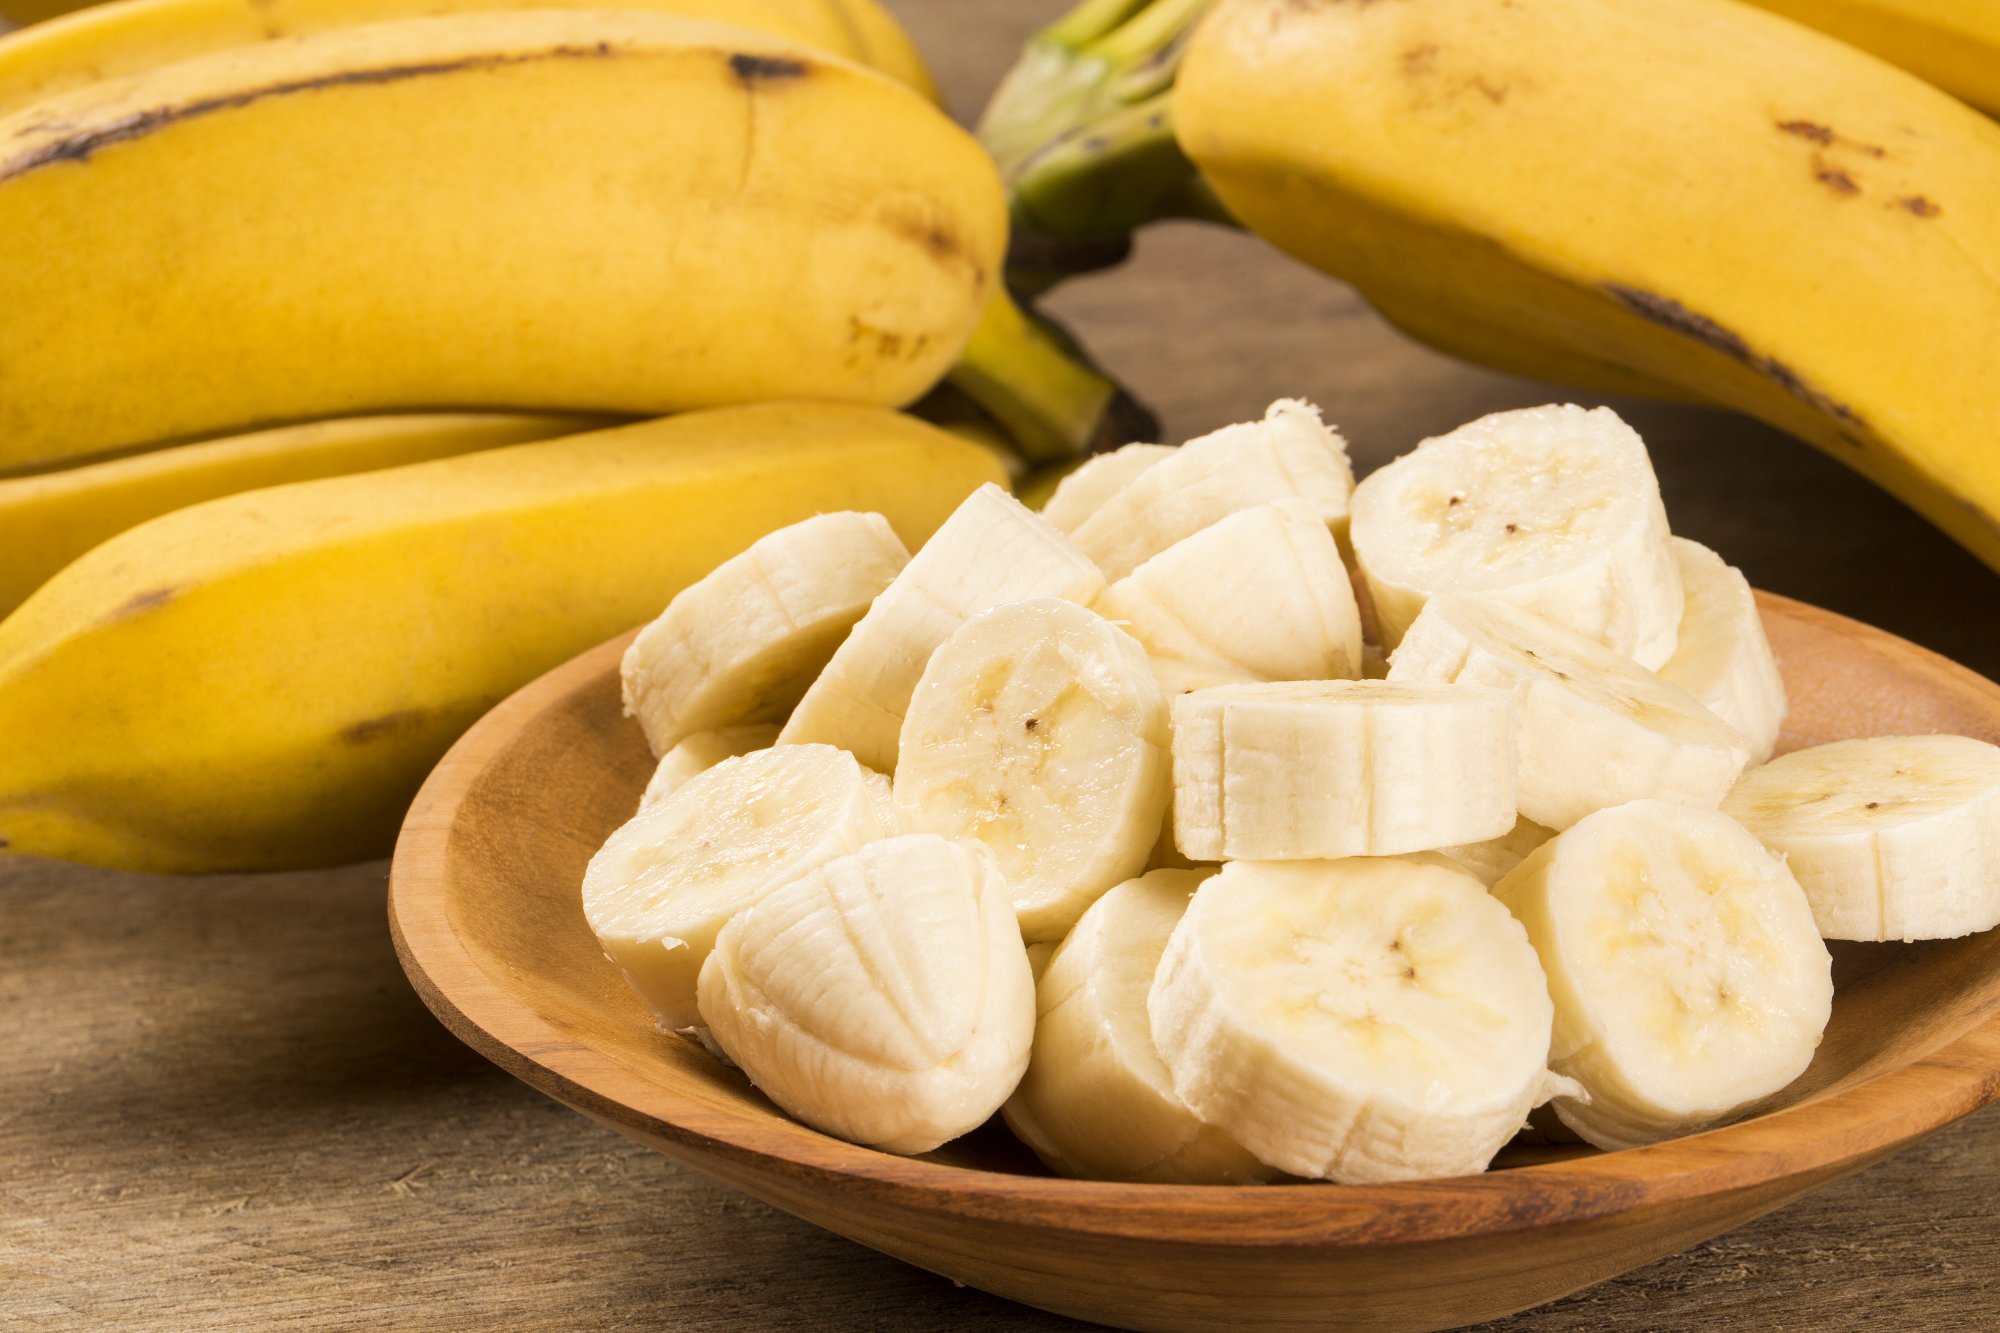 Ασφάλεια τροφίμων: Το τεράστιο λάθος που κάνουμε οι περισσότεροι όταν τρώμε μπανάνες